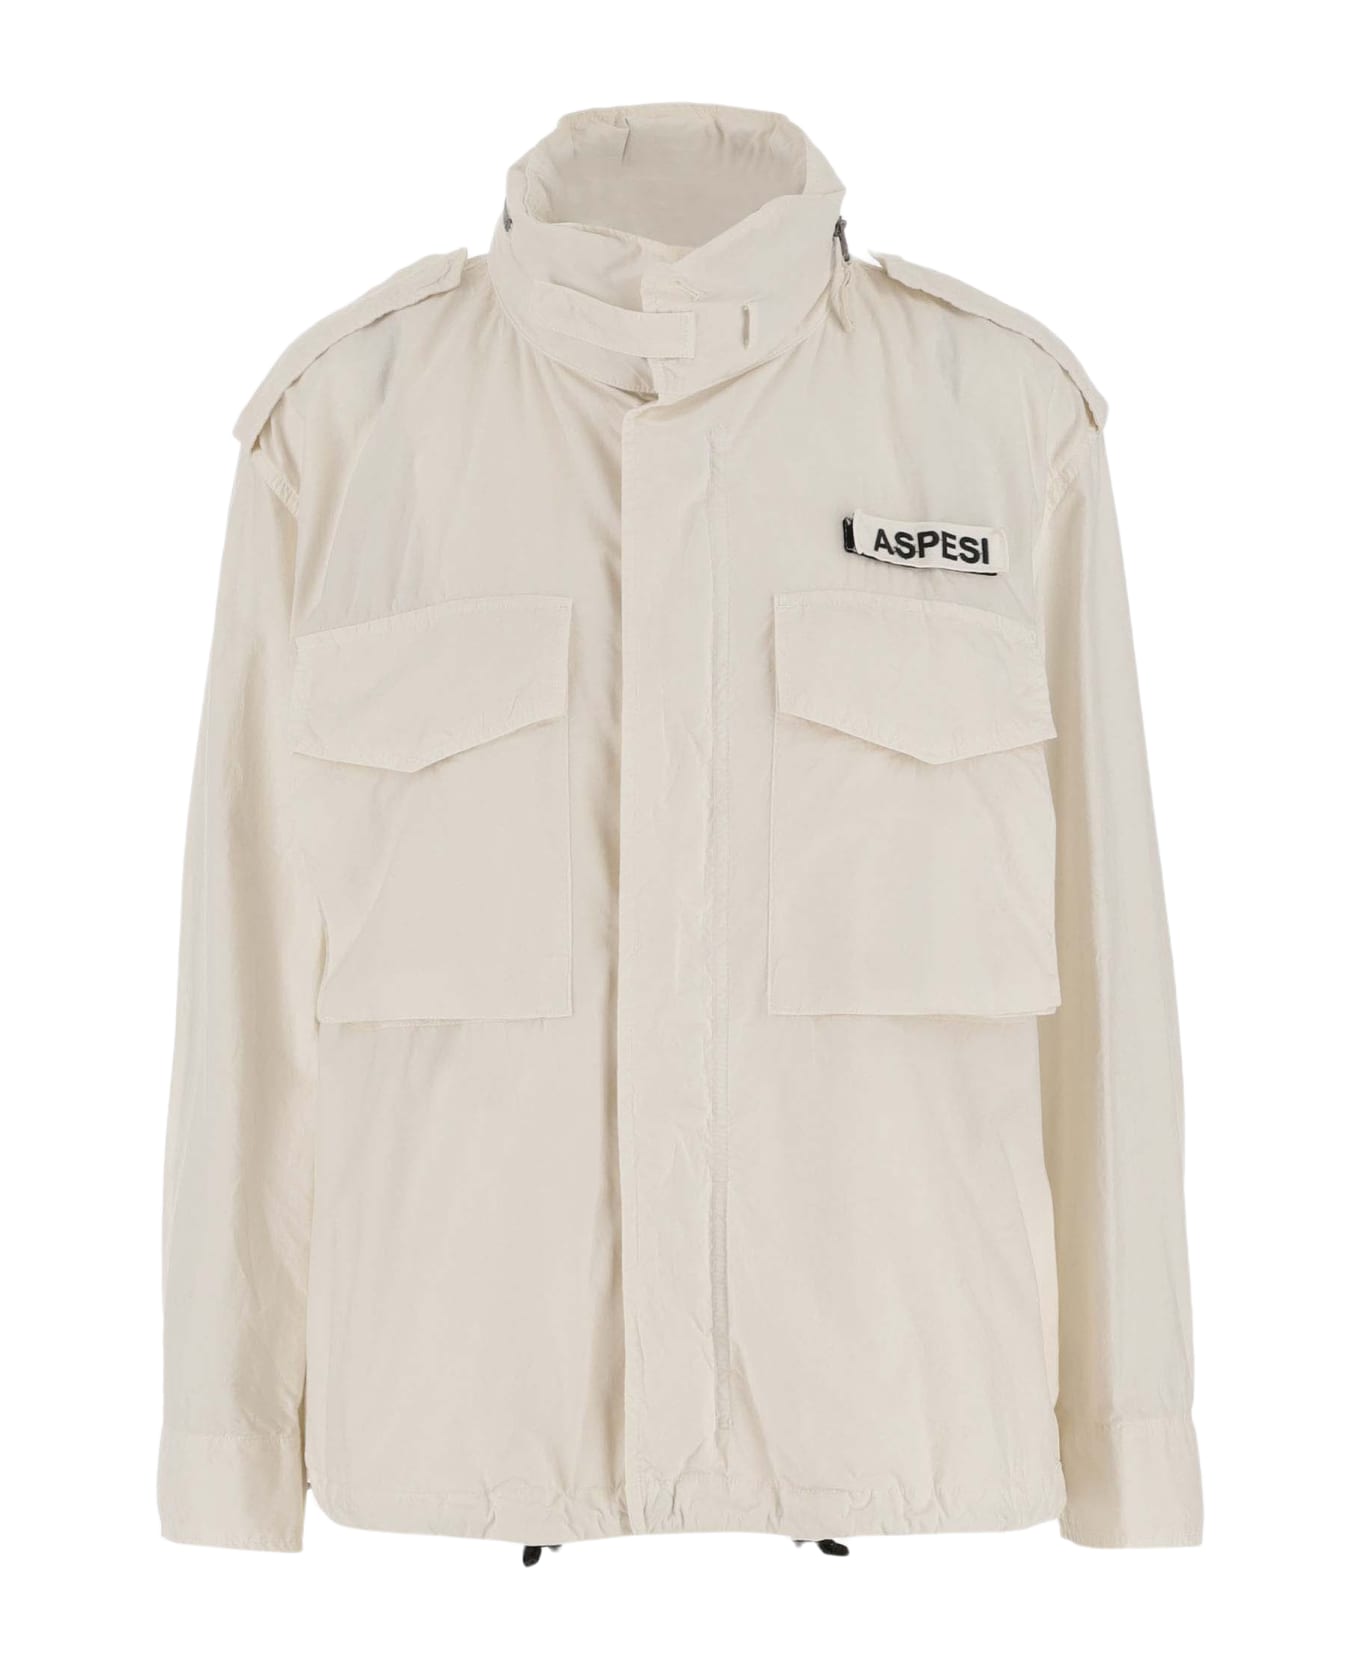 Aspesi Cotton Jacket With Logo - Ivory ジャケット